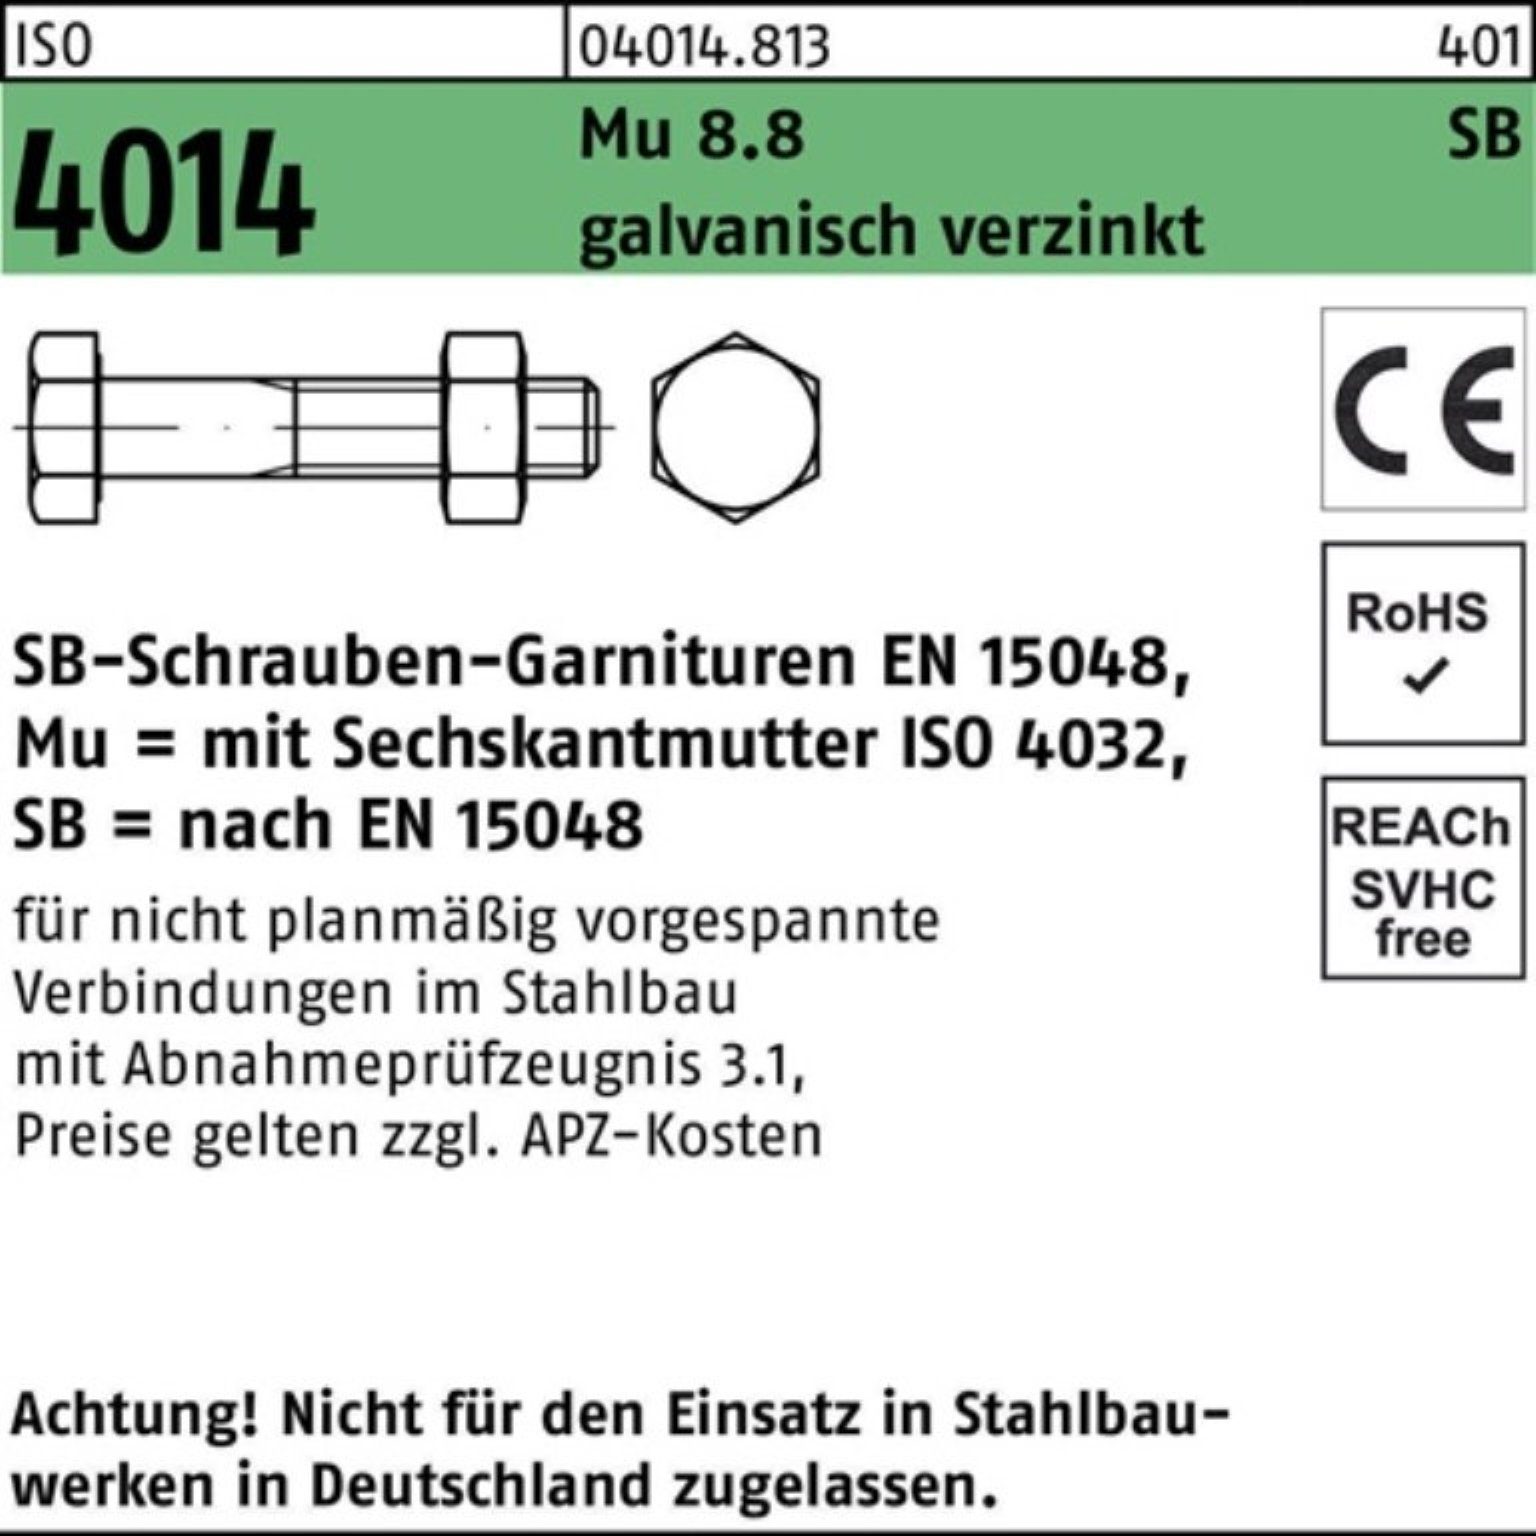 M12x50 Schaft/Mutter Bufab galv Sechskantschraube Sechskantschraube 4014 ISO 100er 8.8 Mu Pack